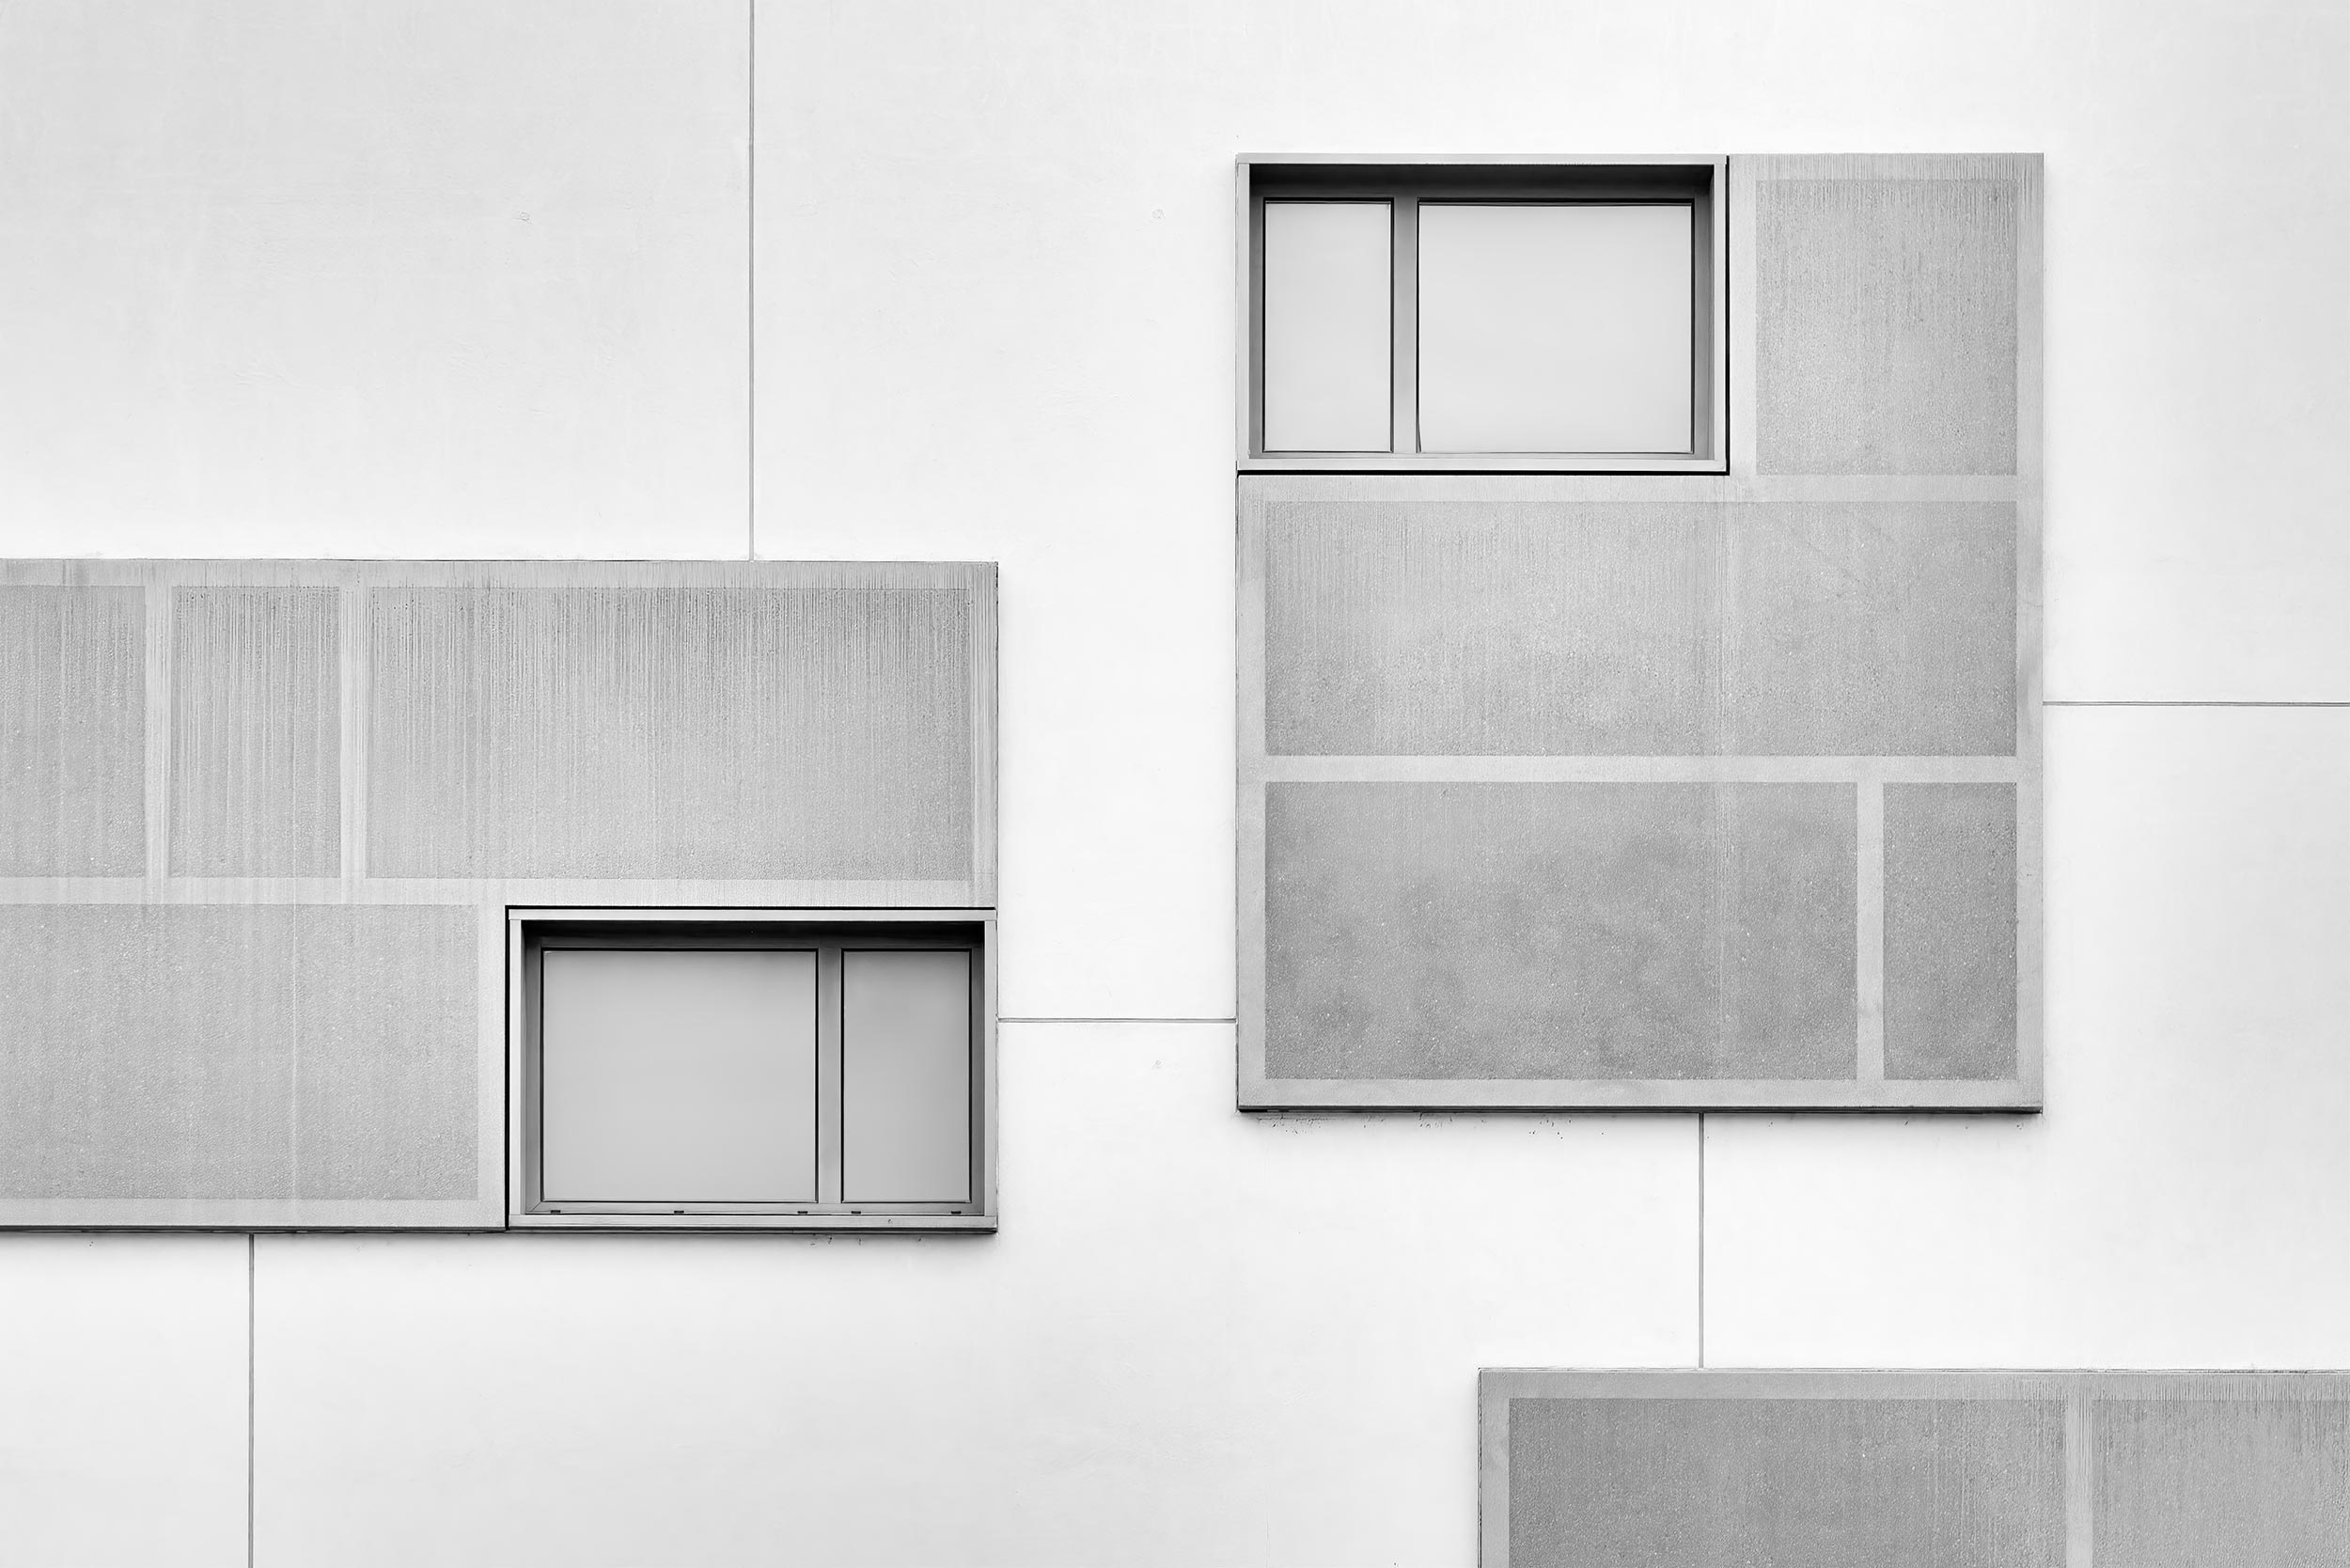 Staatliche Studienakademie, Dresden - KSG Architekten - Black & White Fine Art Architecture Photography